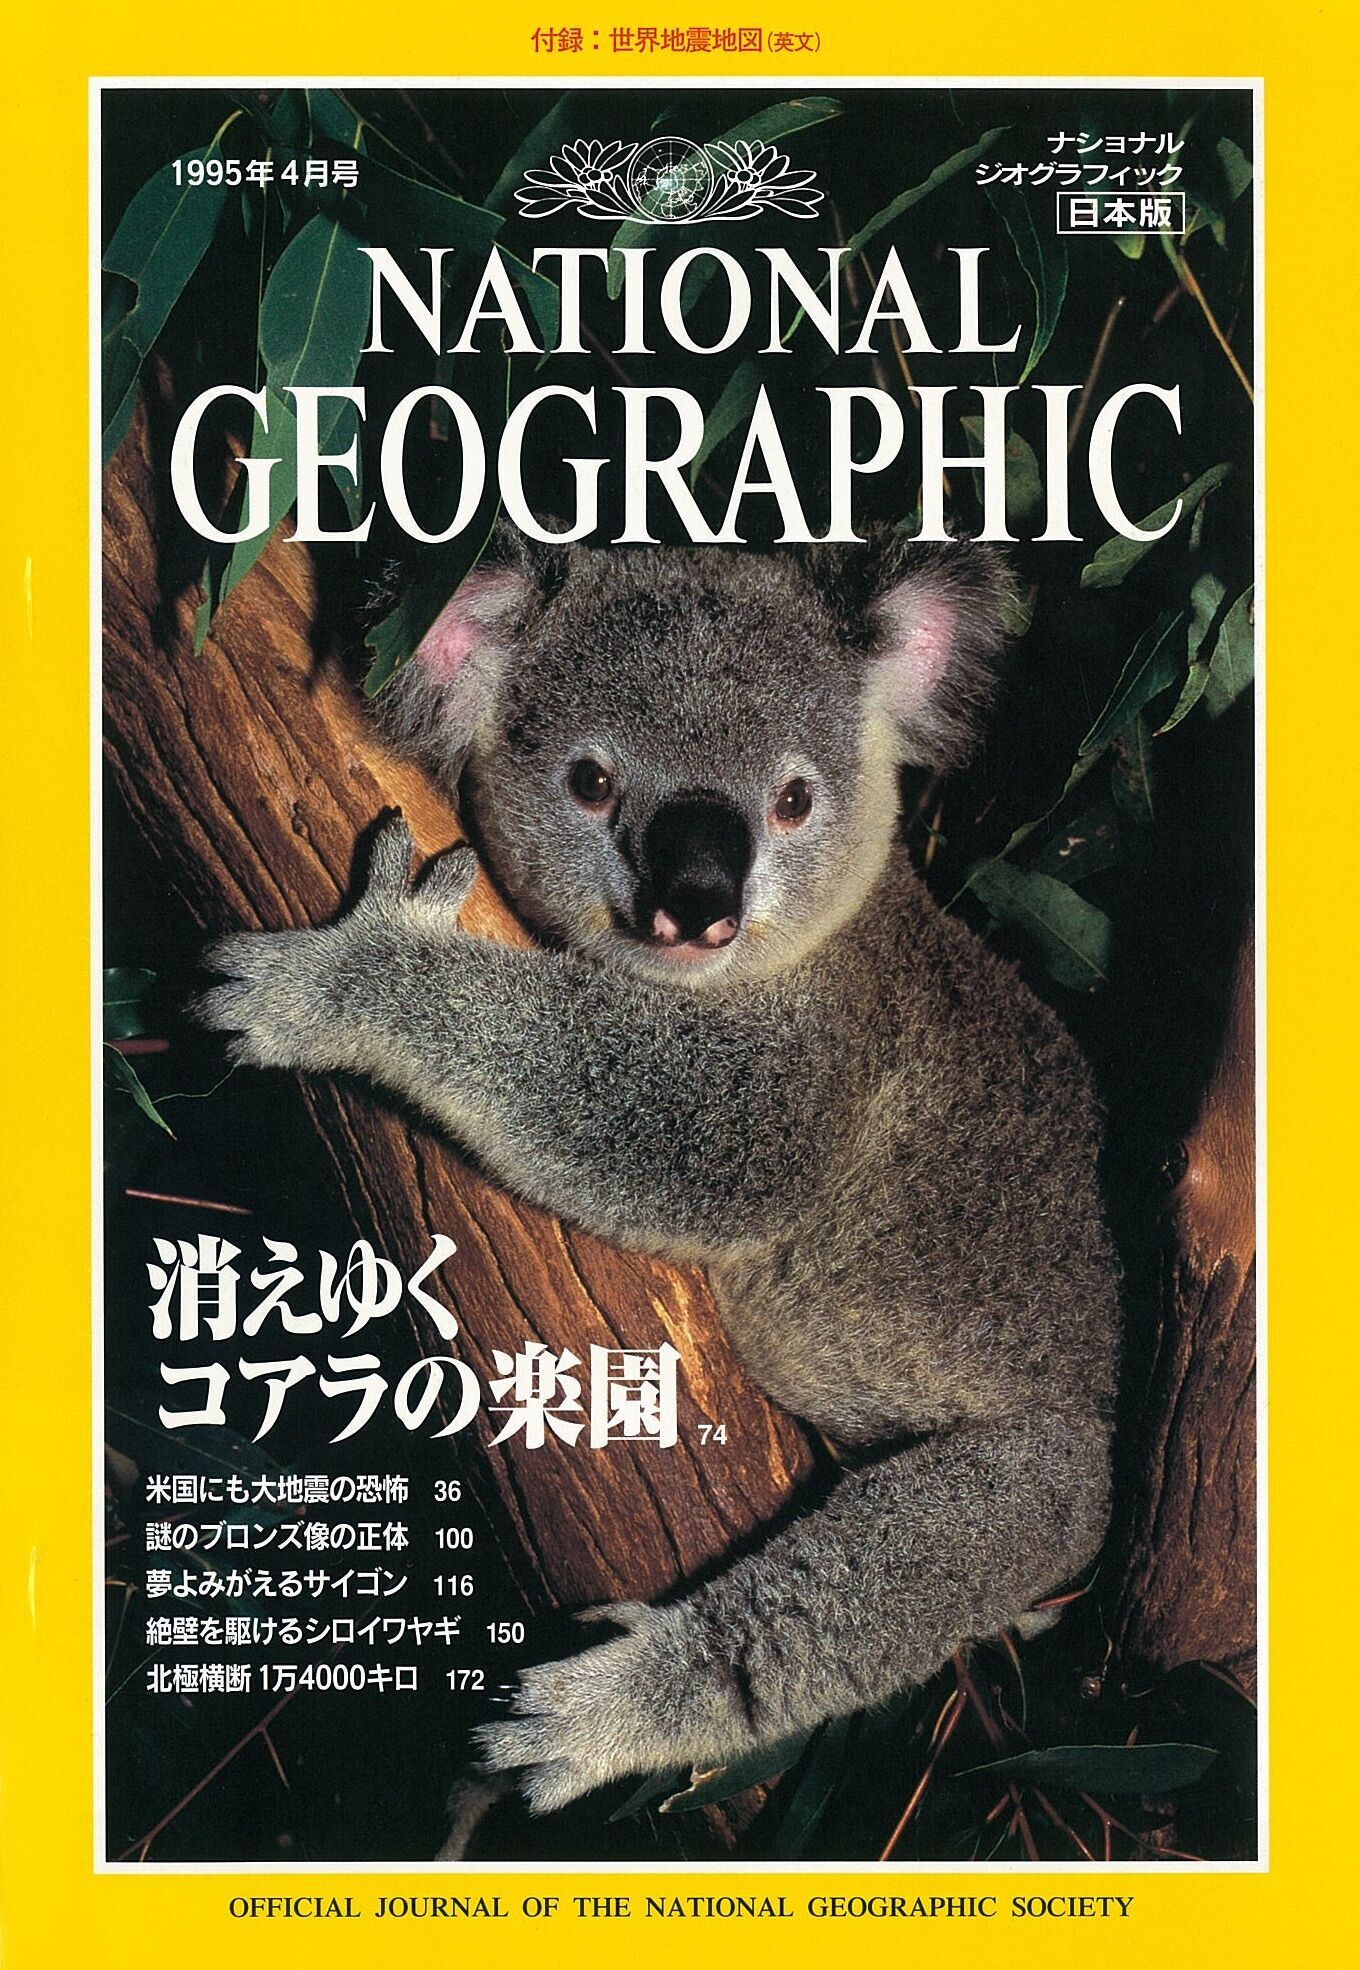 ナショナル ジオグラフィック日本版』創刊25周年記念読者向けサービス 